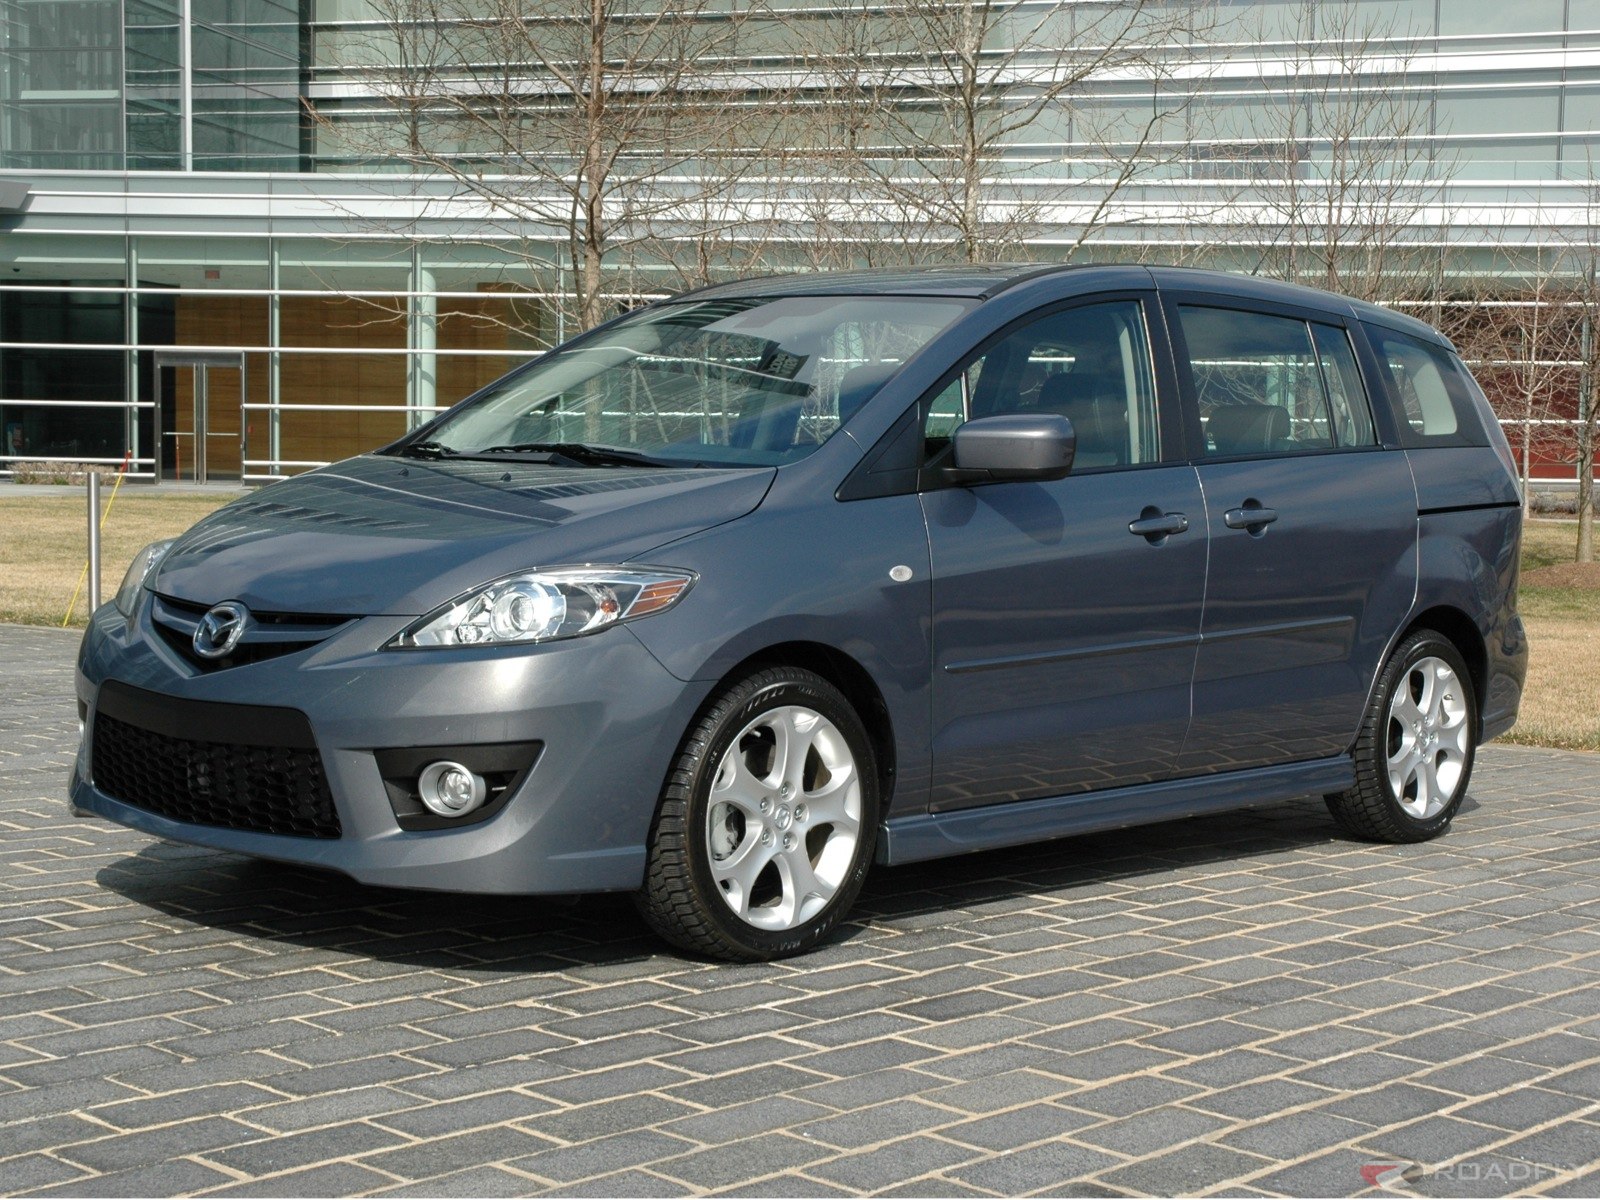 Mazda 5 2008